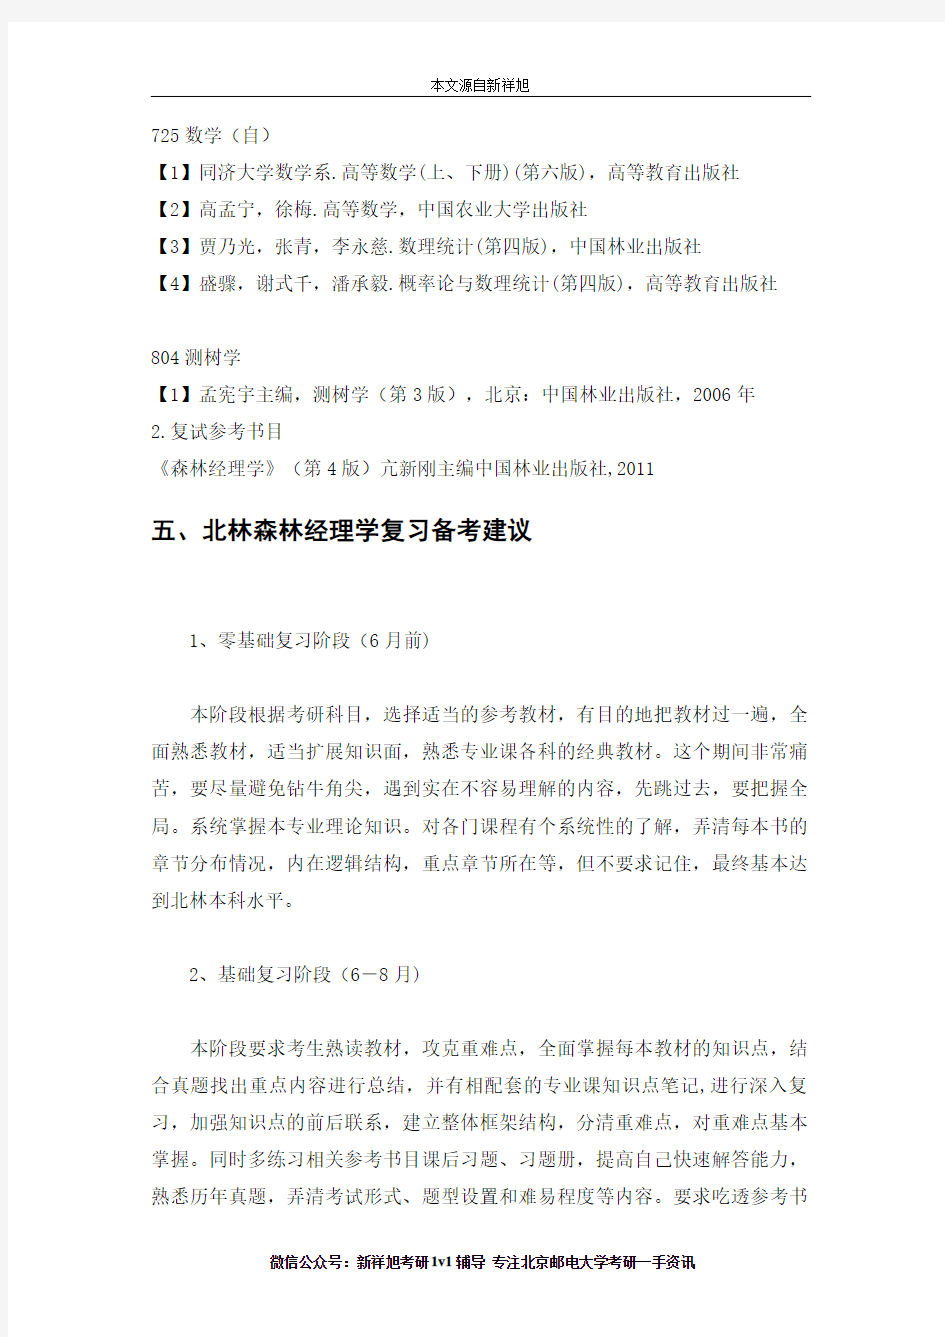 2019年北京林业大学林学院森林经理学(090704)研究方向、考试科目、参考书目、考研经验、复习指导